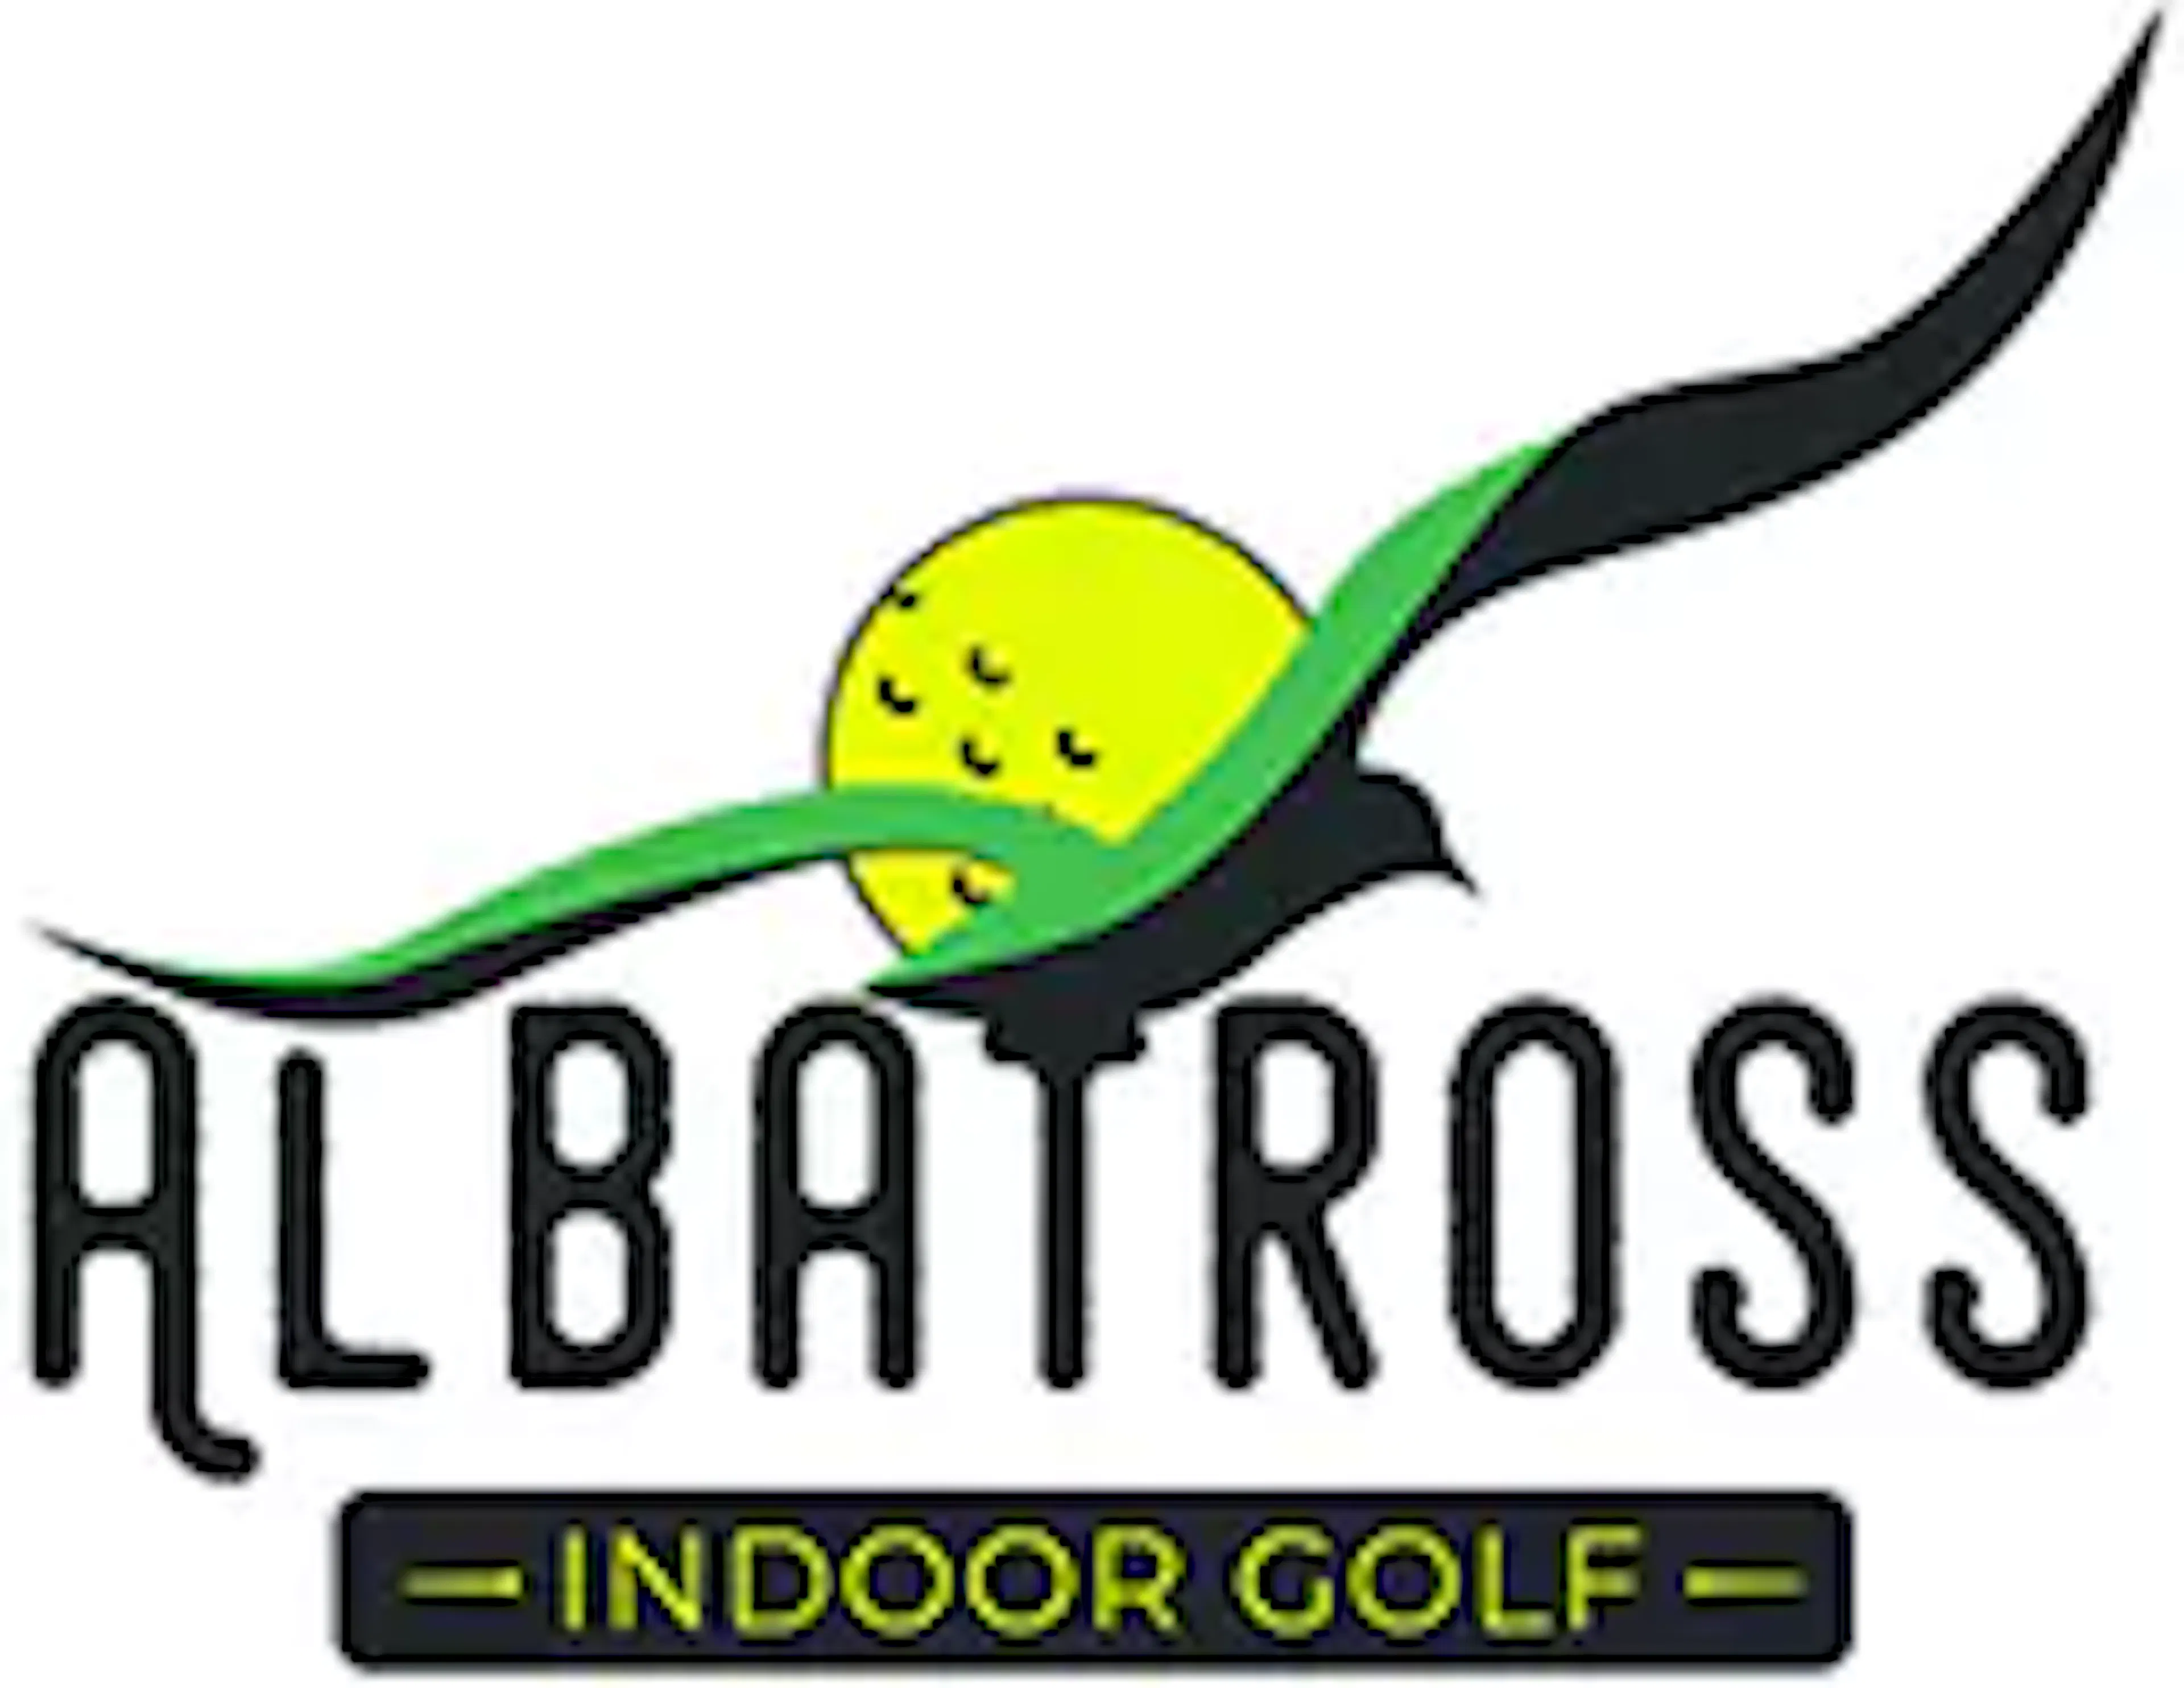 albatross golf